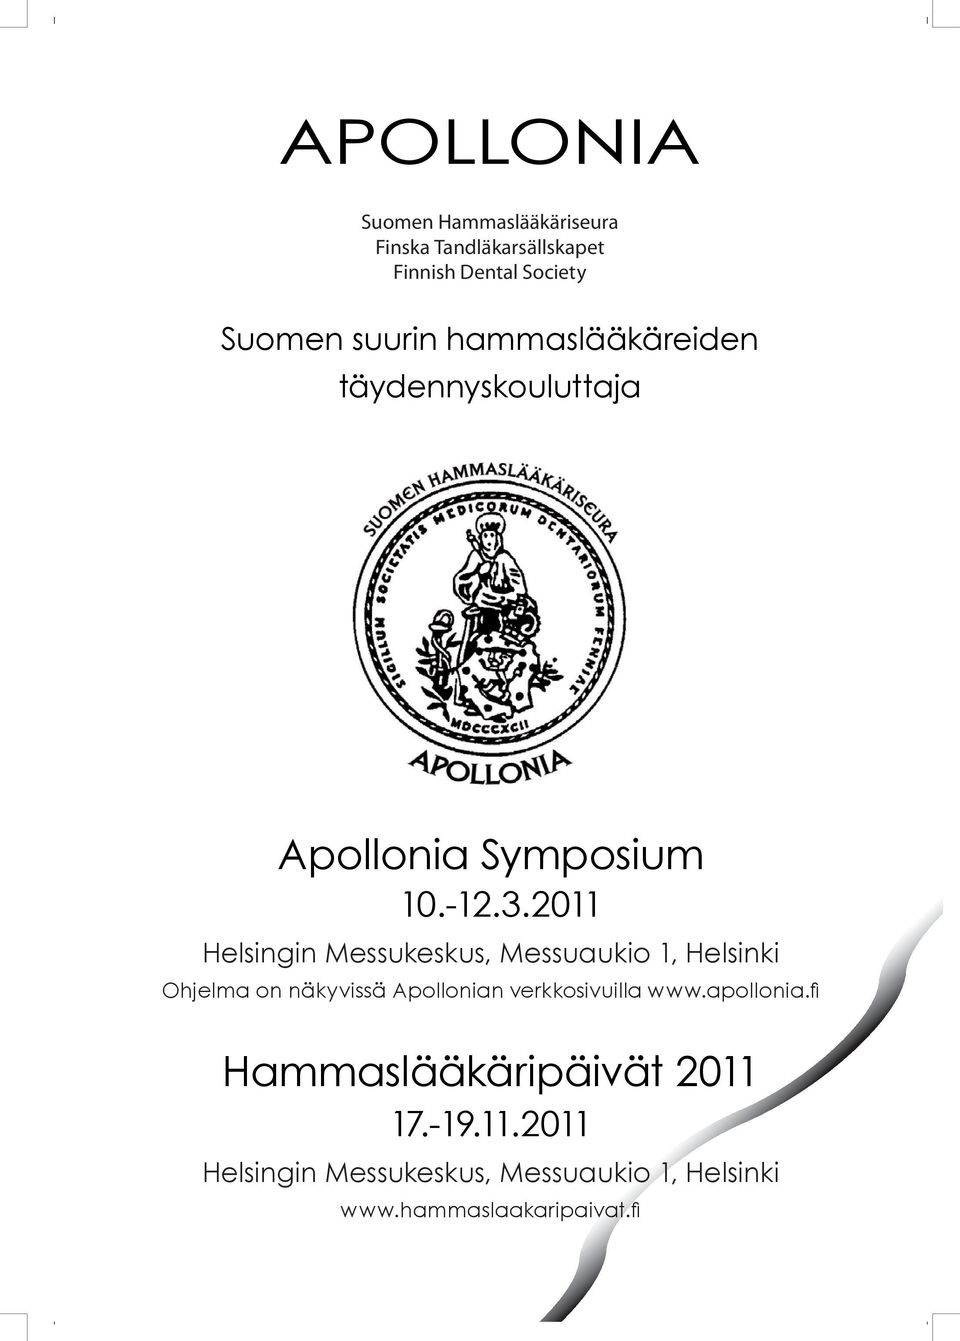 2011 Helsingin Messukeskus, Messuaukio 1, Helsinki Ohjelma on näkyvissä Apollonian verkkosivuilla